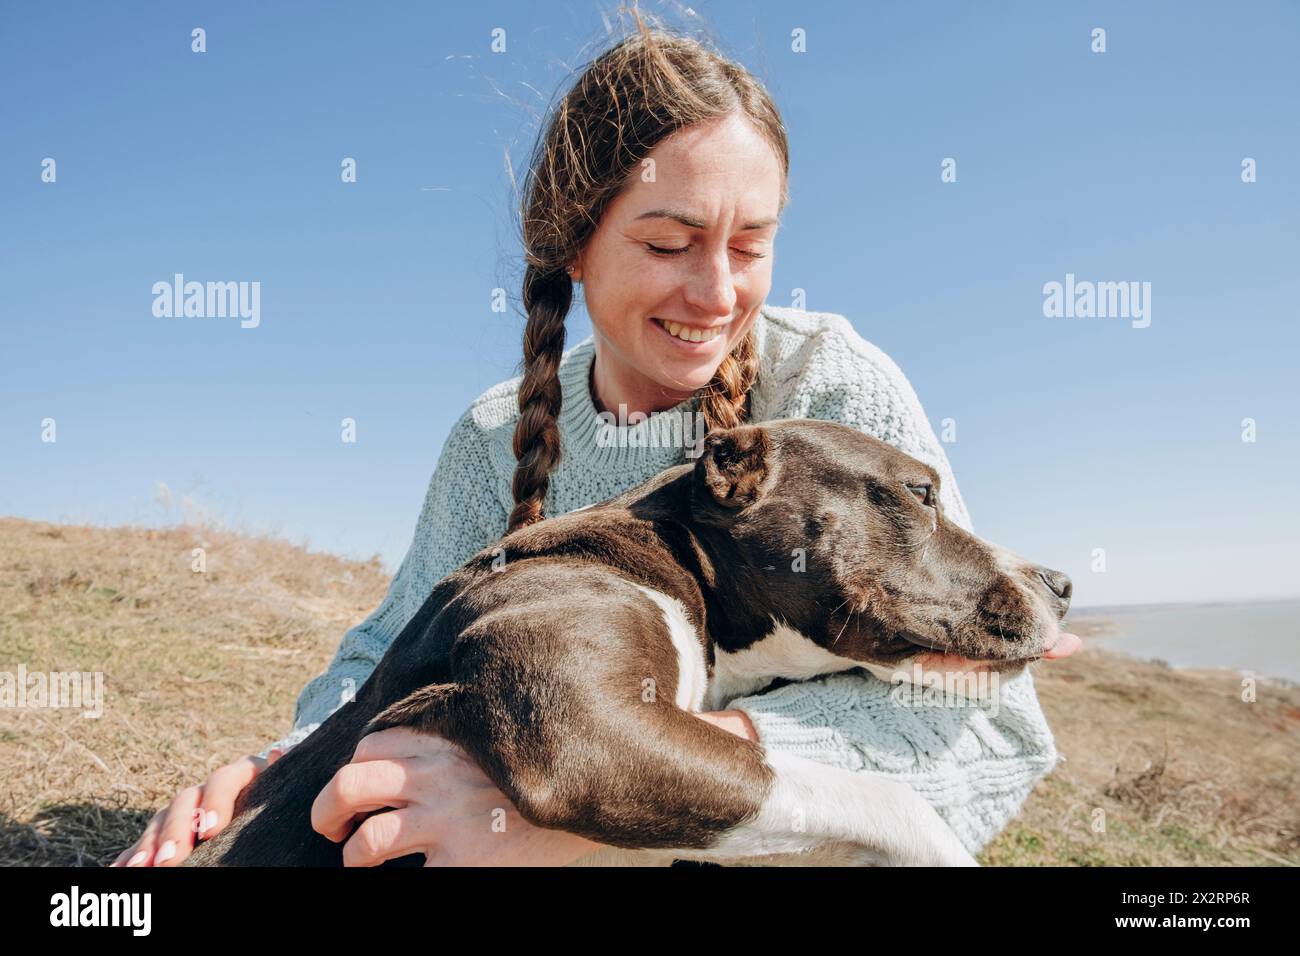 Donna sorridente che passa il tempo libero con il cane in collina durante la giornata di sole Foto Stock